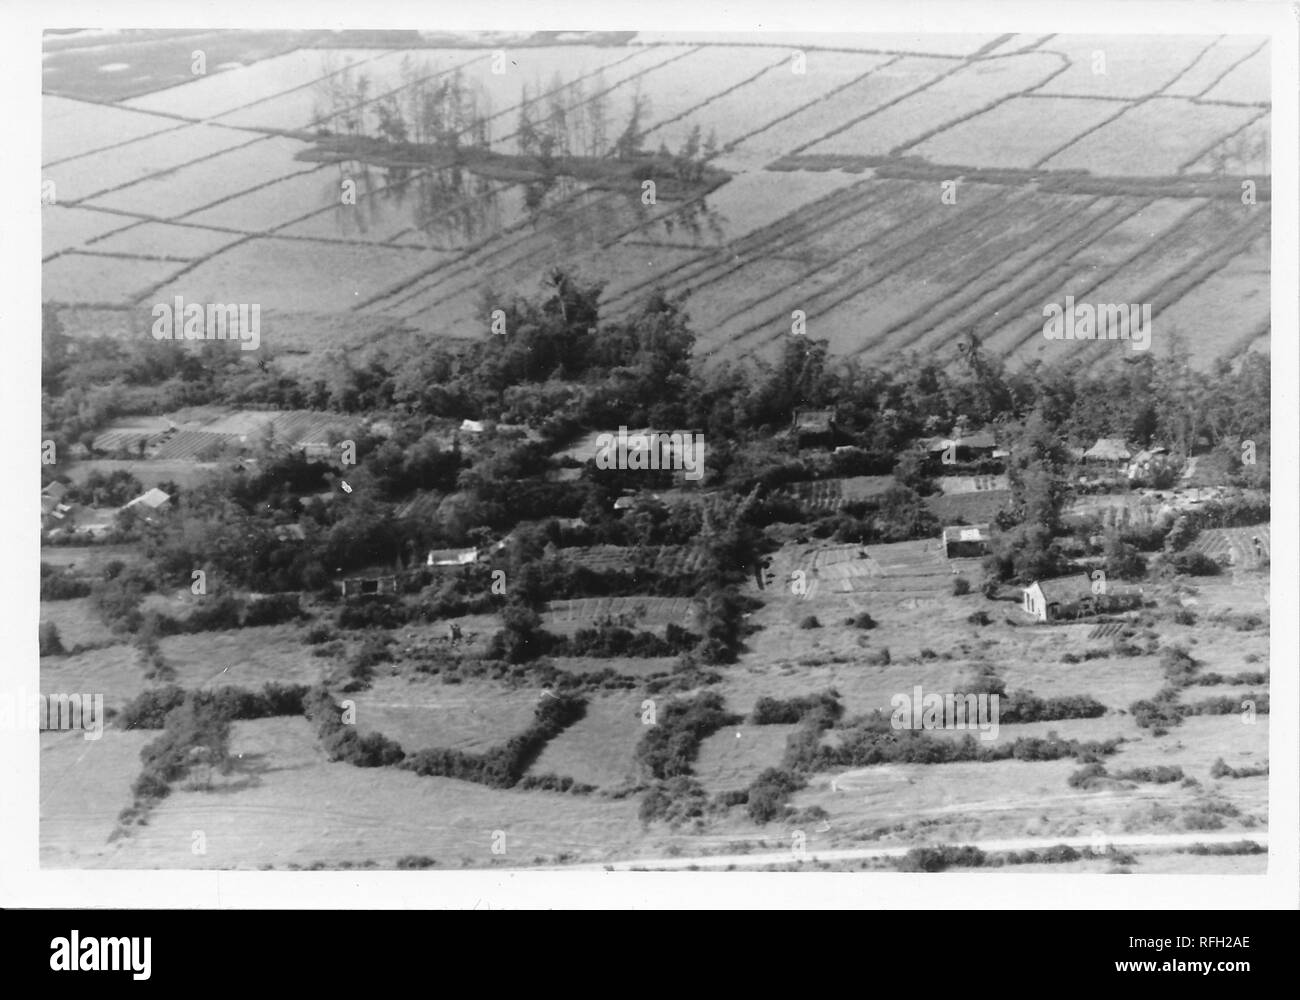 Fotografia in bianco e nero, che mostra una vista aerea o di uccelli vista di un borgo vietnamita o piccolo villaggio, con terreni agricoli inondati (probabile risaie) visibile sullo sfondo, fotografato durante la Guerra del Vietnam, 1968. () Foto Stock